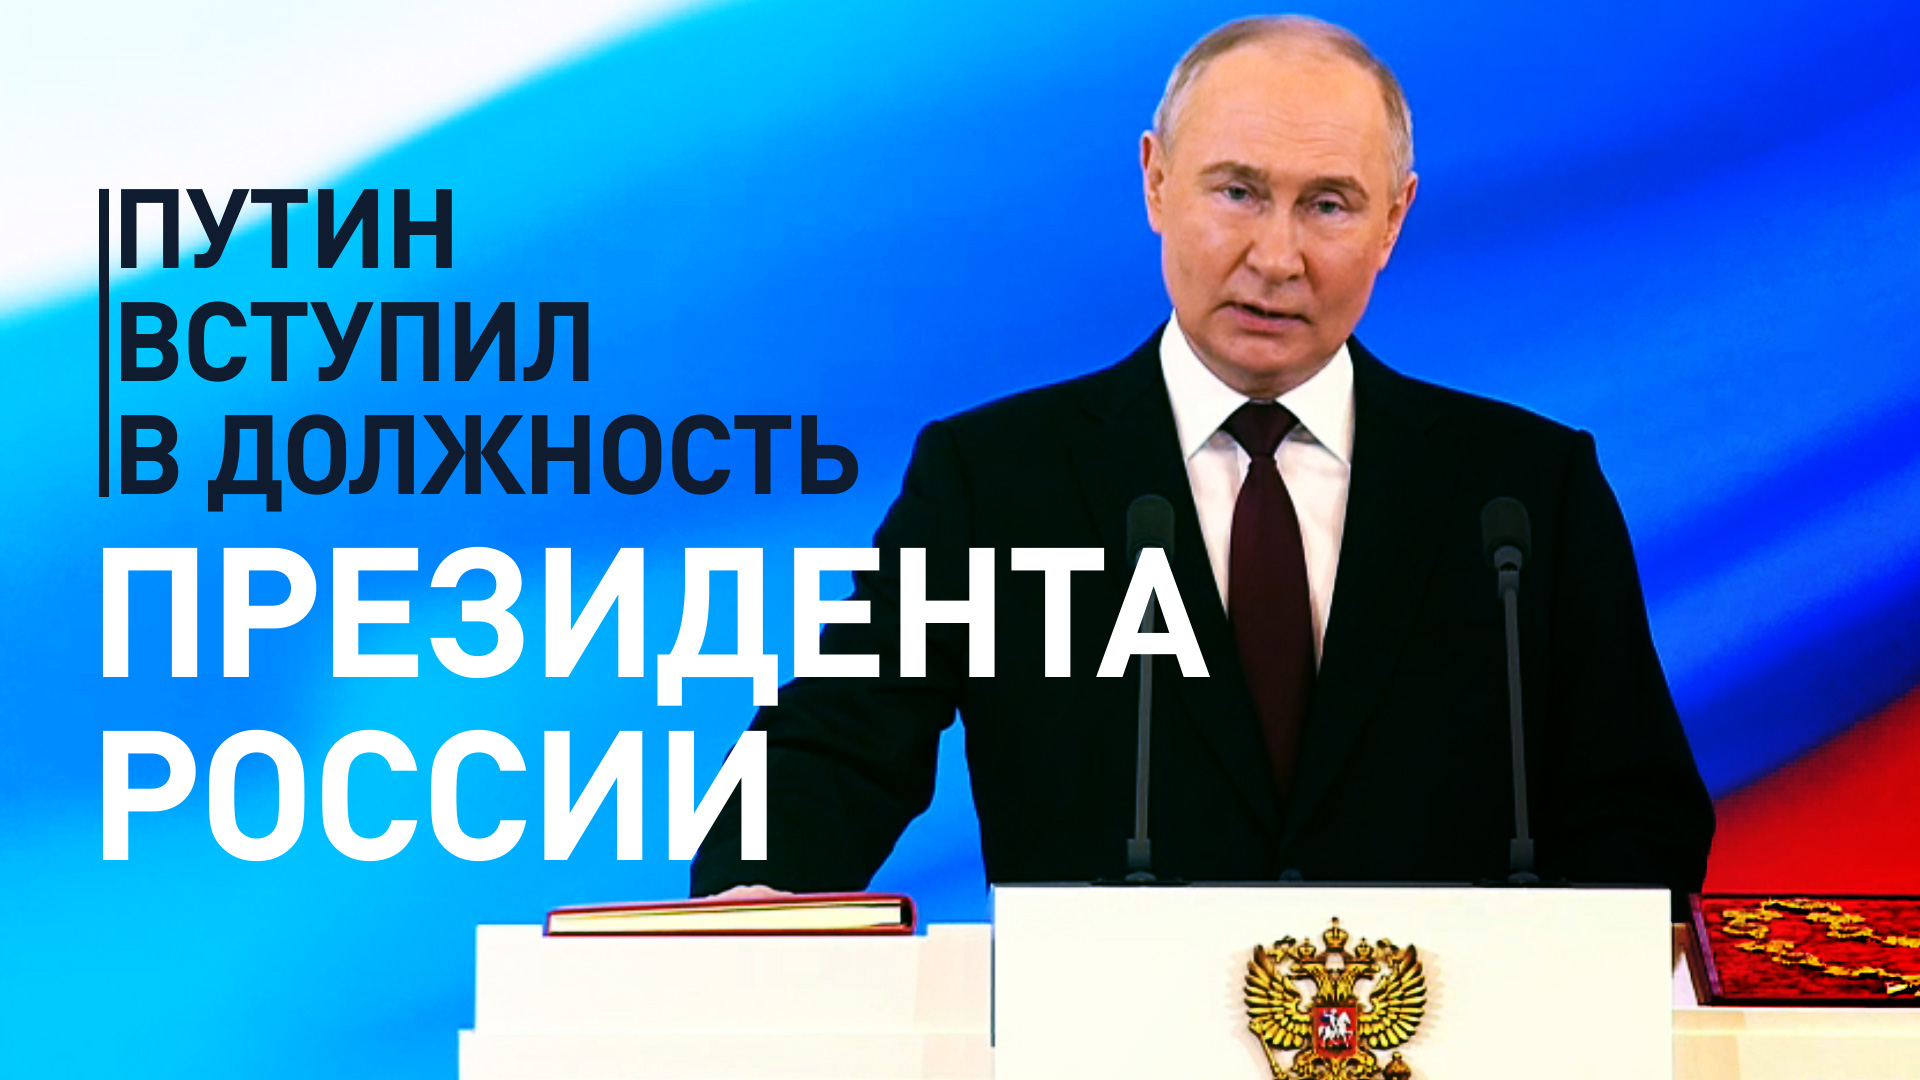 Владимир Путин вступил в должность президента России на новый срок — видео